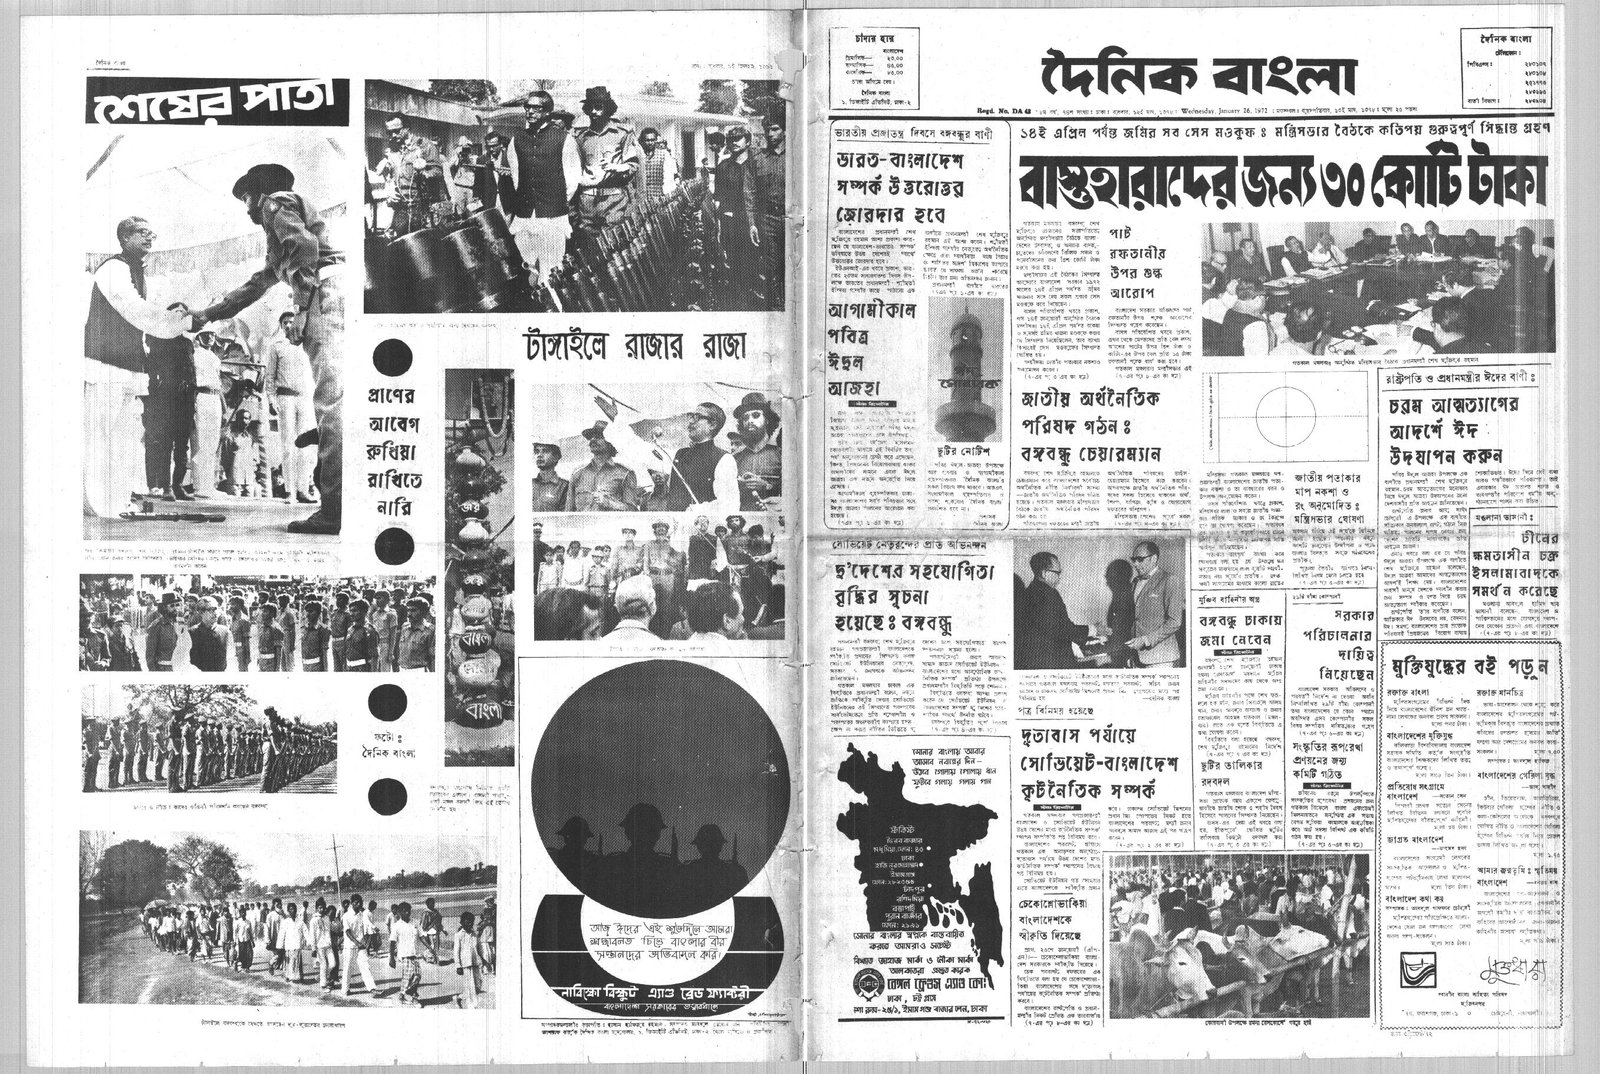 26JAN1972-DAINIK BANGLA-Regular-Page 1 and 8